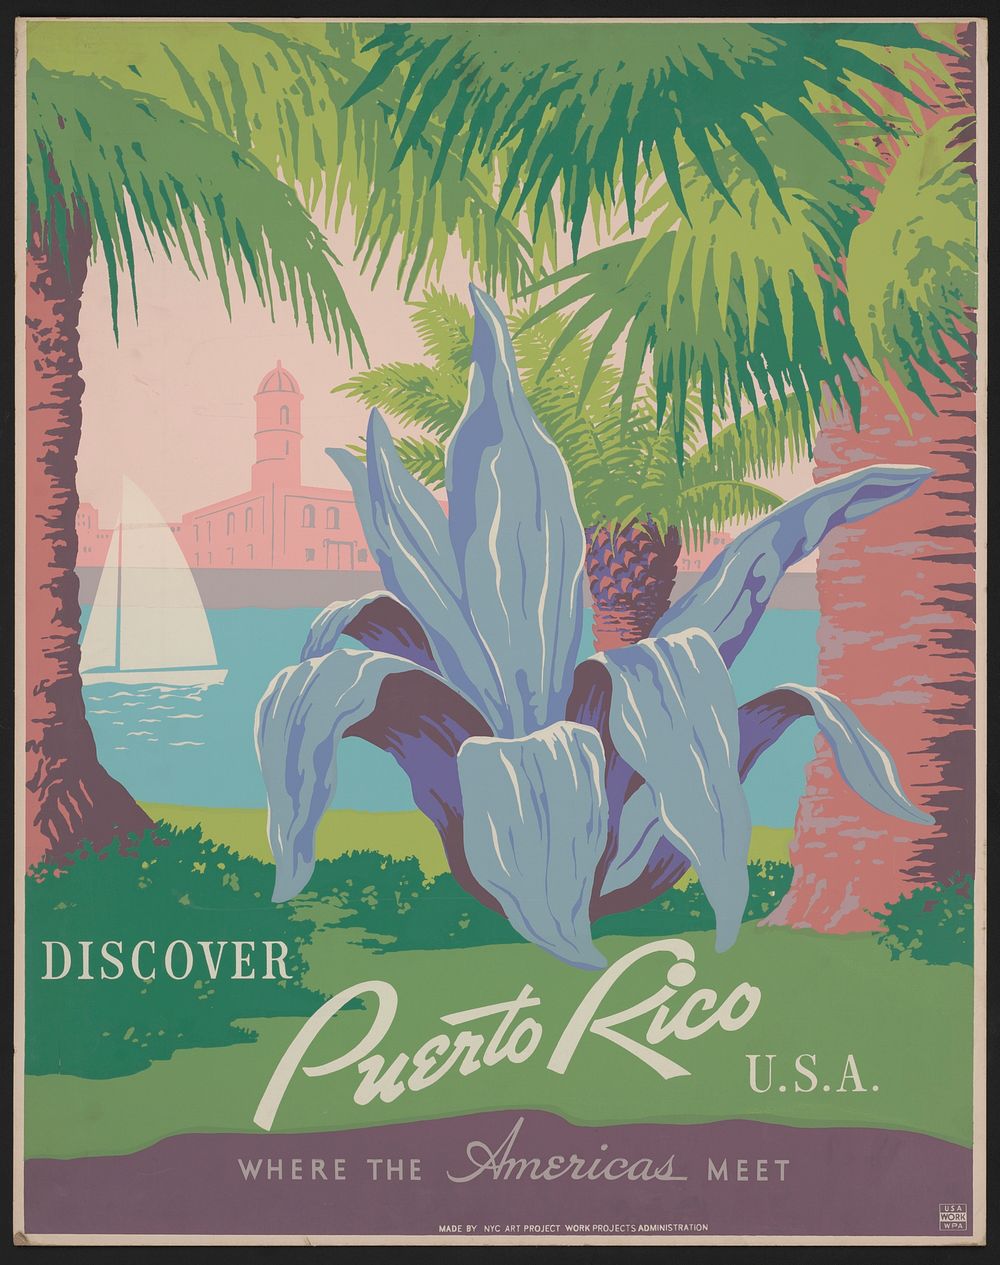 Discover Puerto Rico U.S.A. Where the Americas meet.